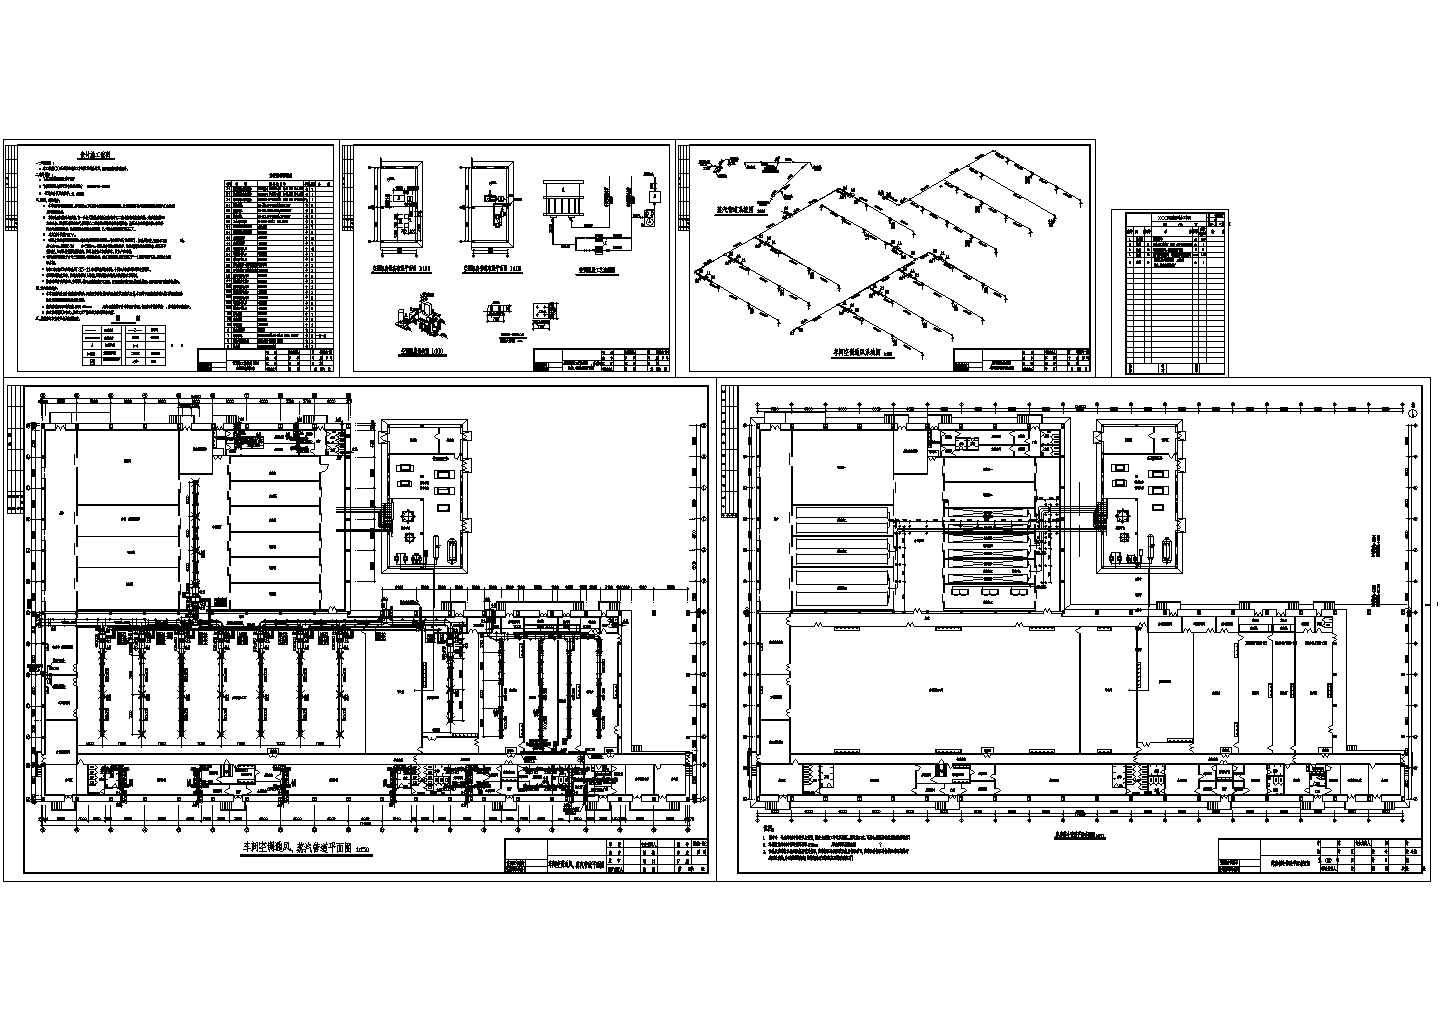 XX五星集团鸡加工车间设施部分通风、空调及蒸汽管道设计图纸